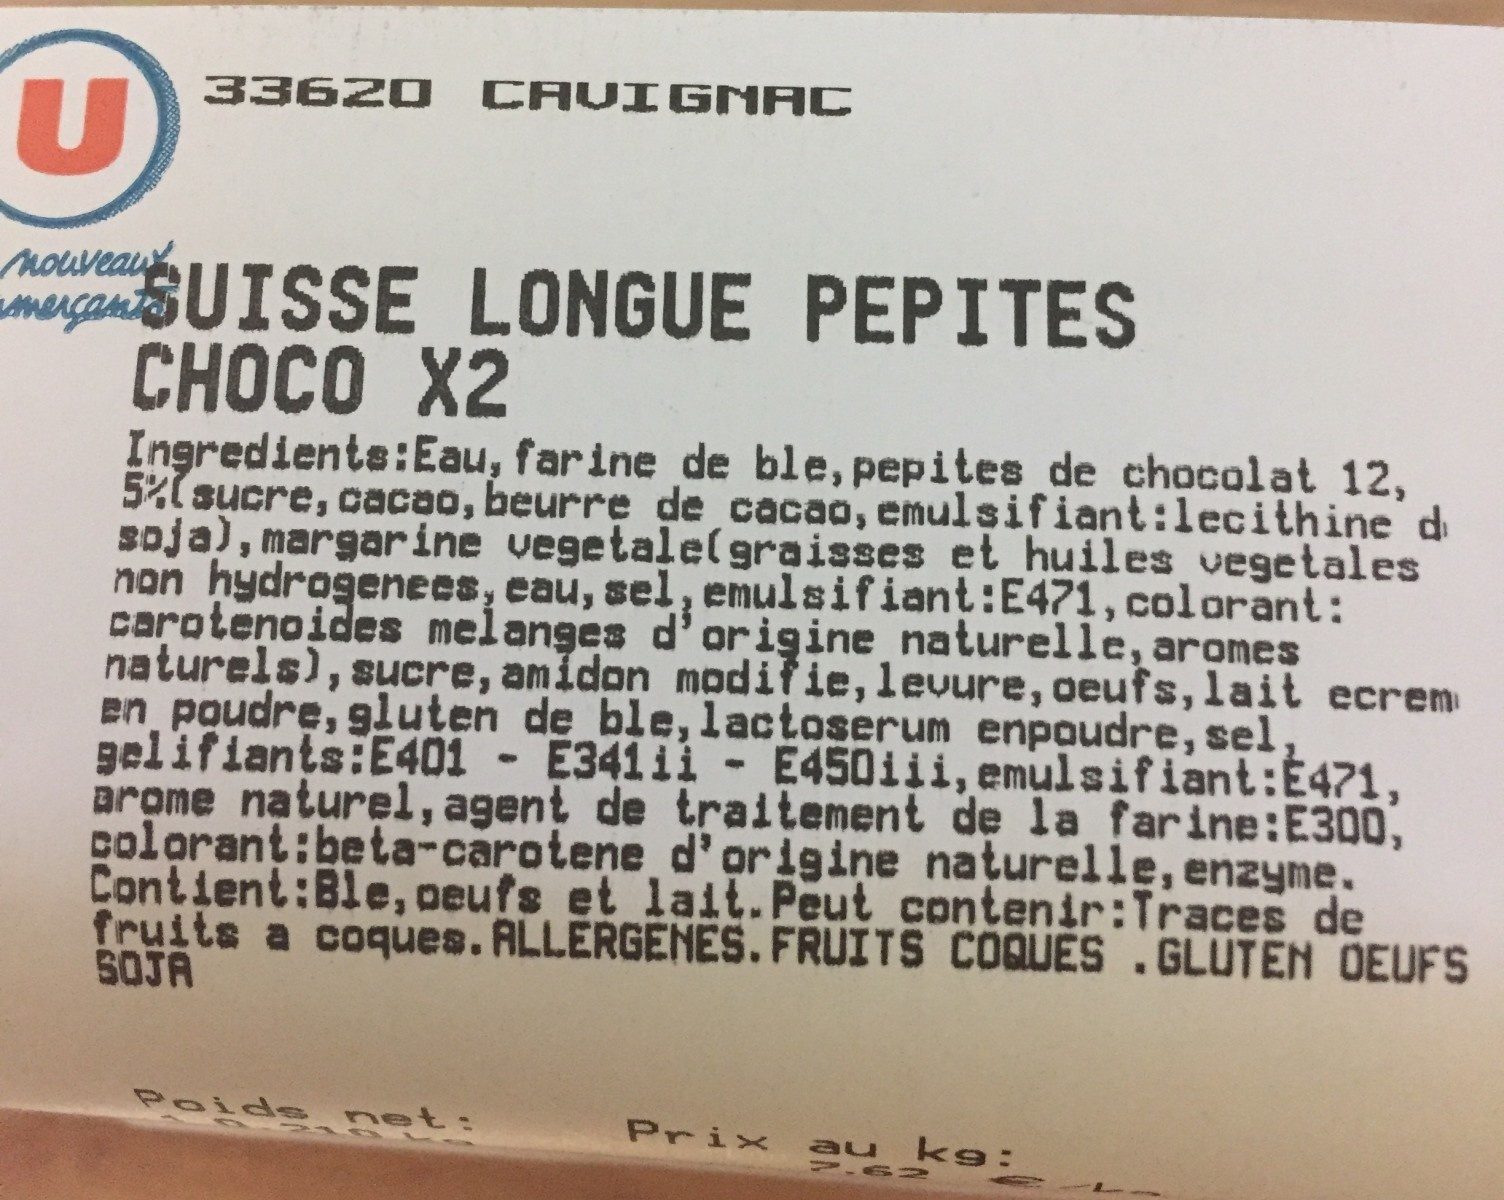 Suisse Longue Pepites choco x2 - Ingredients - fr